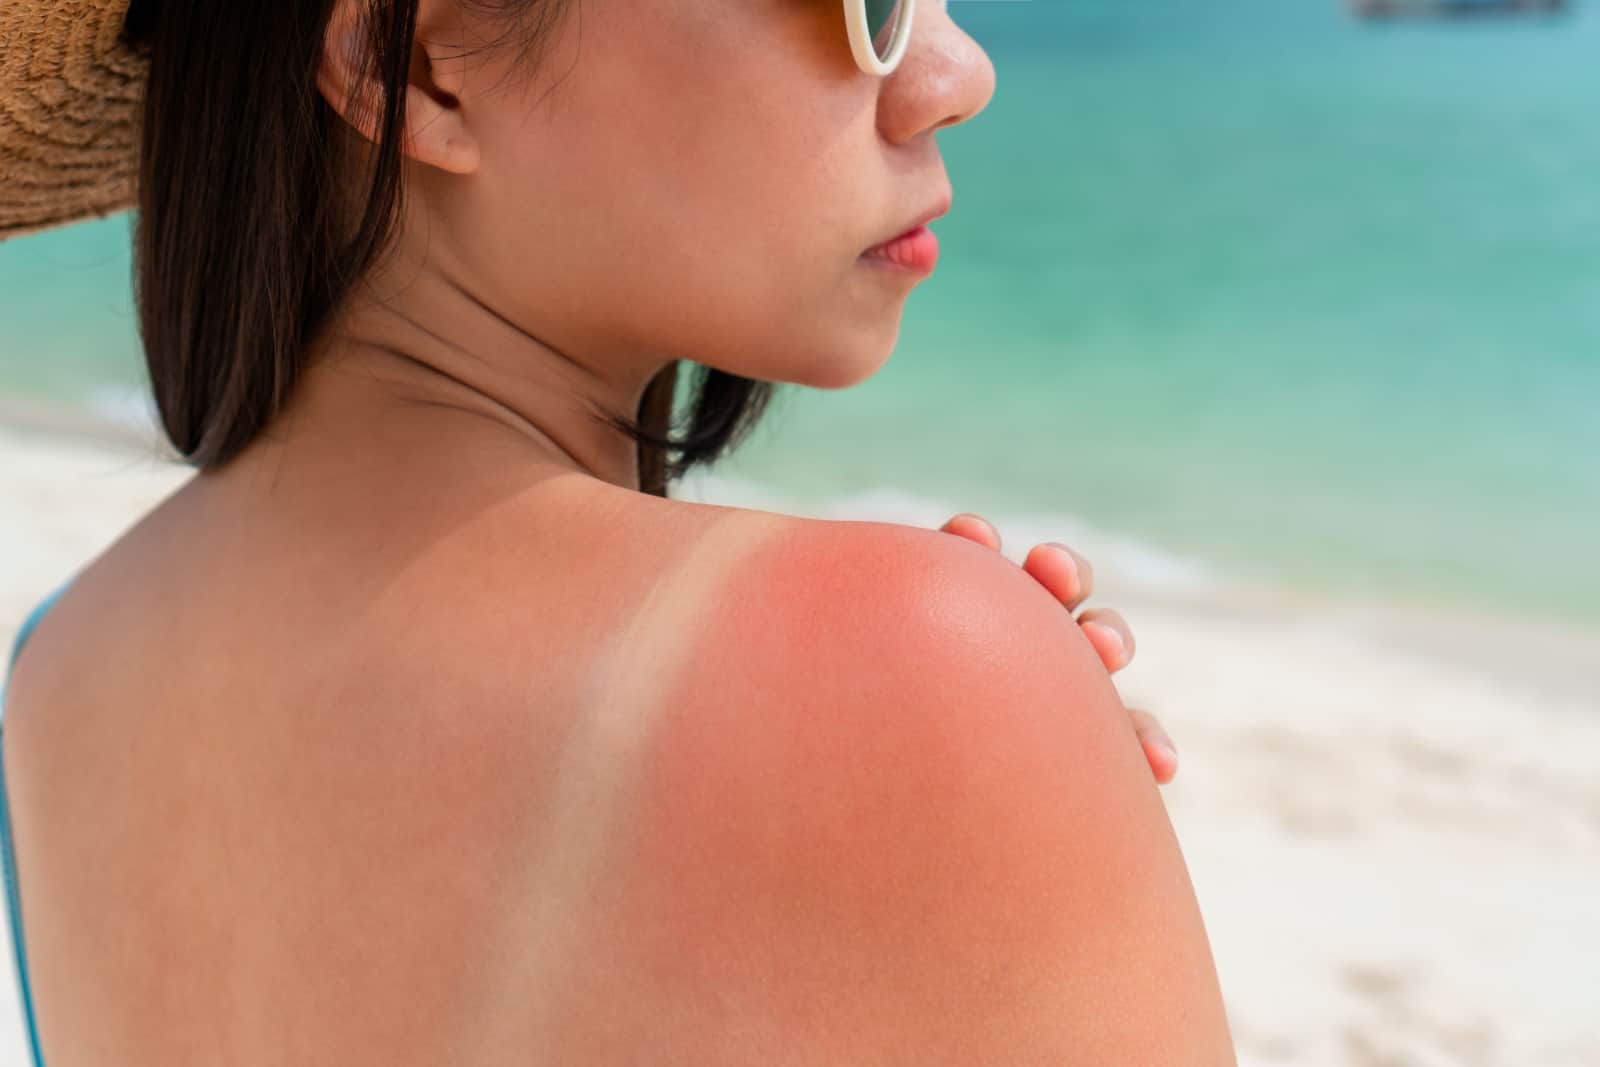 Sunburned skin on shoulder of a woman